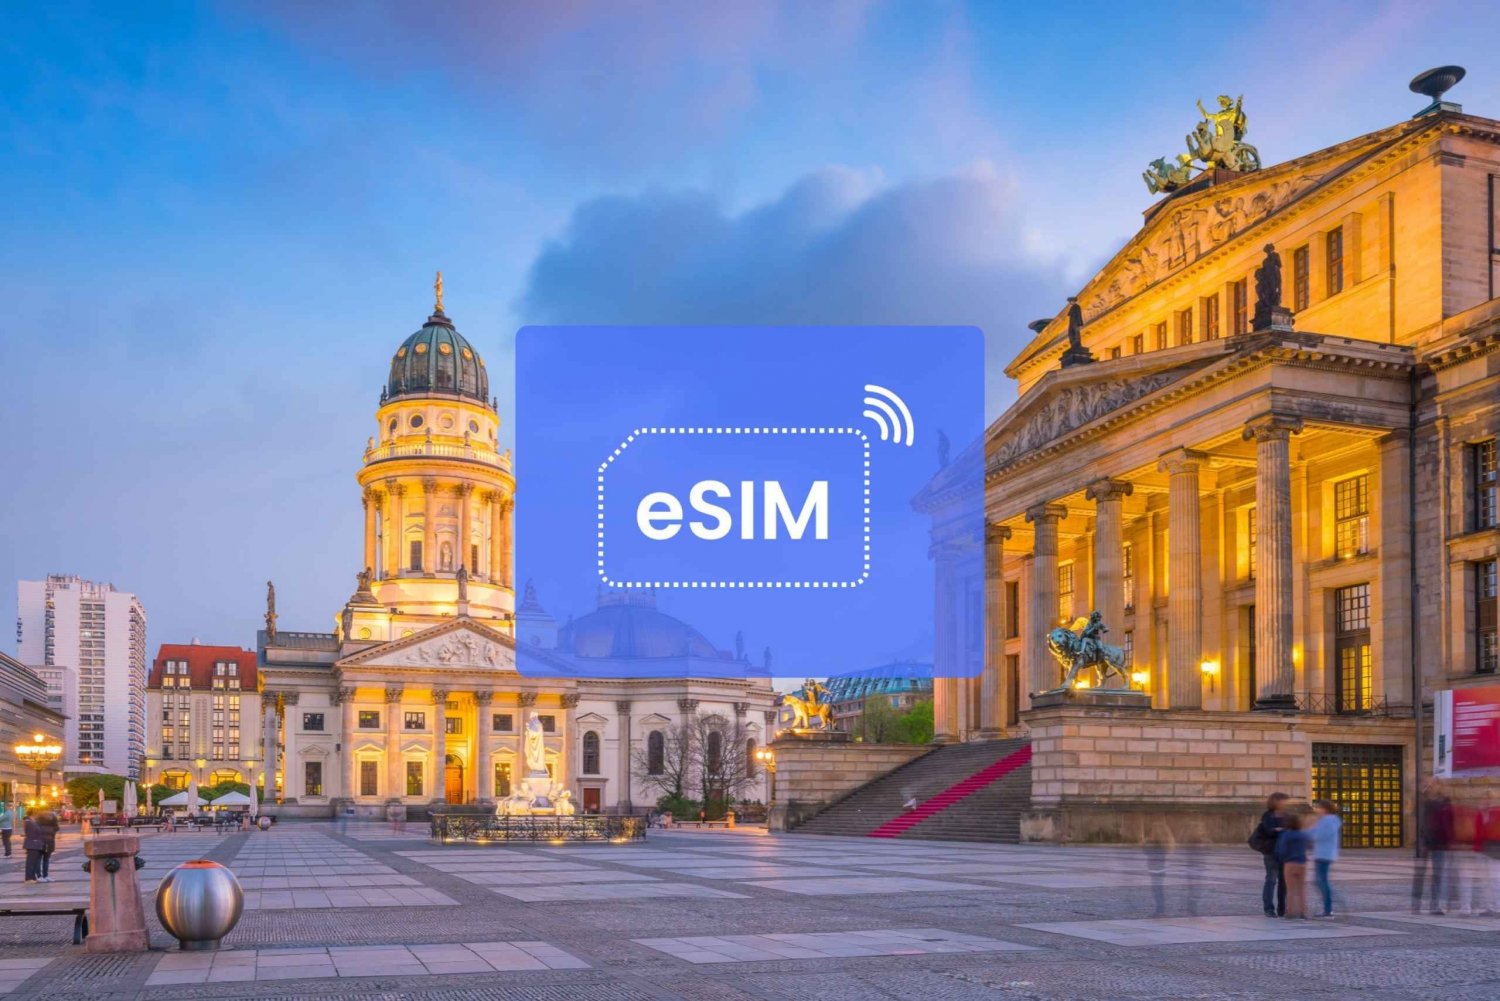 Wien: Østerrike/Europa eSIM Roaming Mobile Data Plan